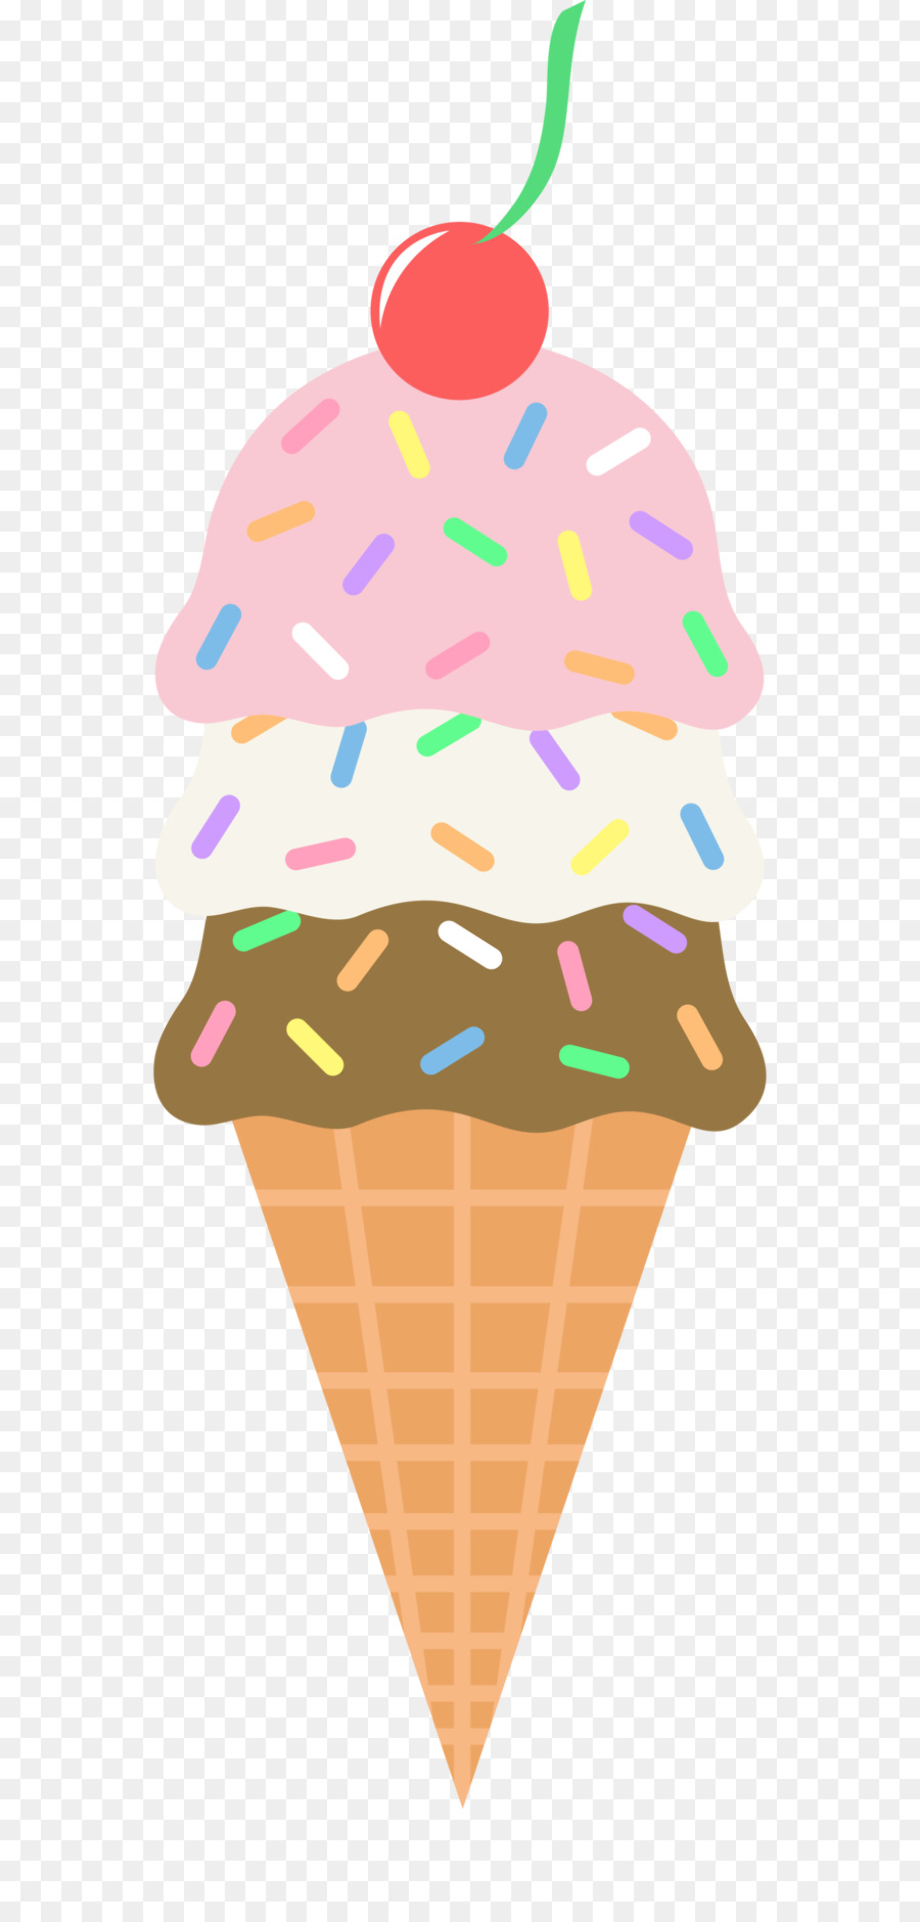 ice cream sundae clipart transparent background